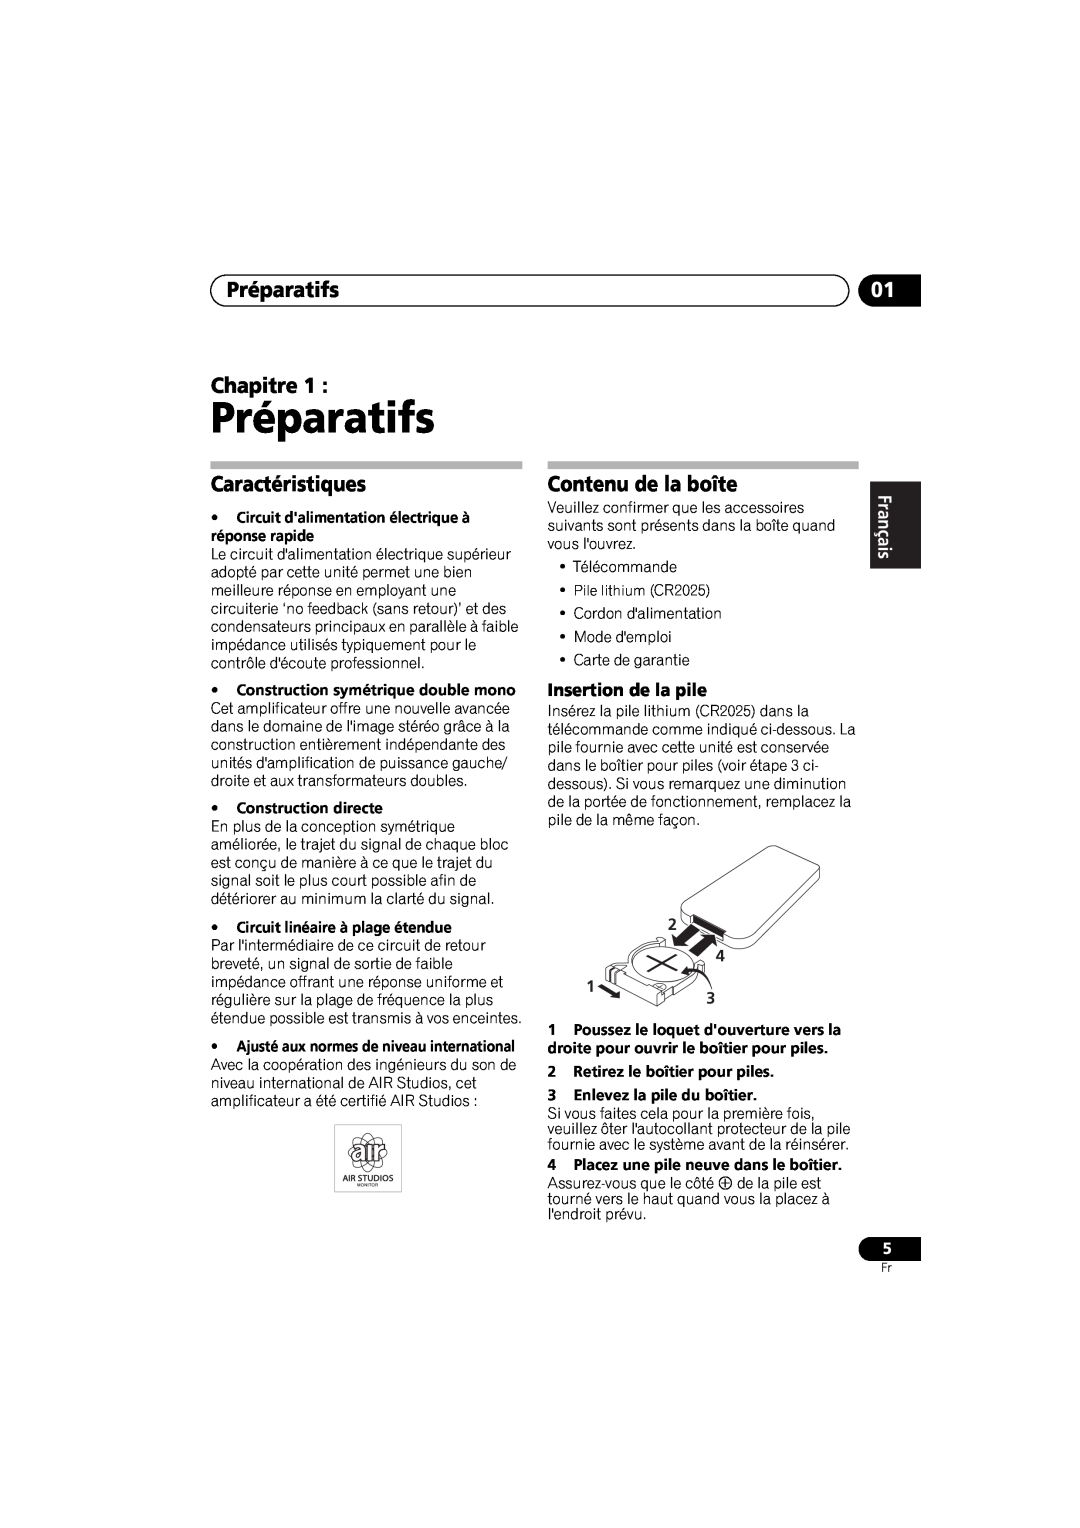 Pioneer A-A6-J manual Préparatifs Chapitre, Caractéristiques, Contenu de la boîte, Insertion de la pile, English 